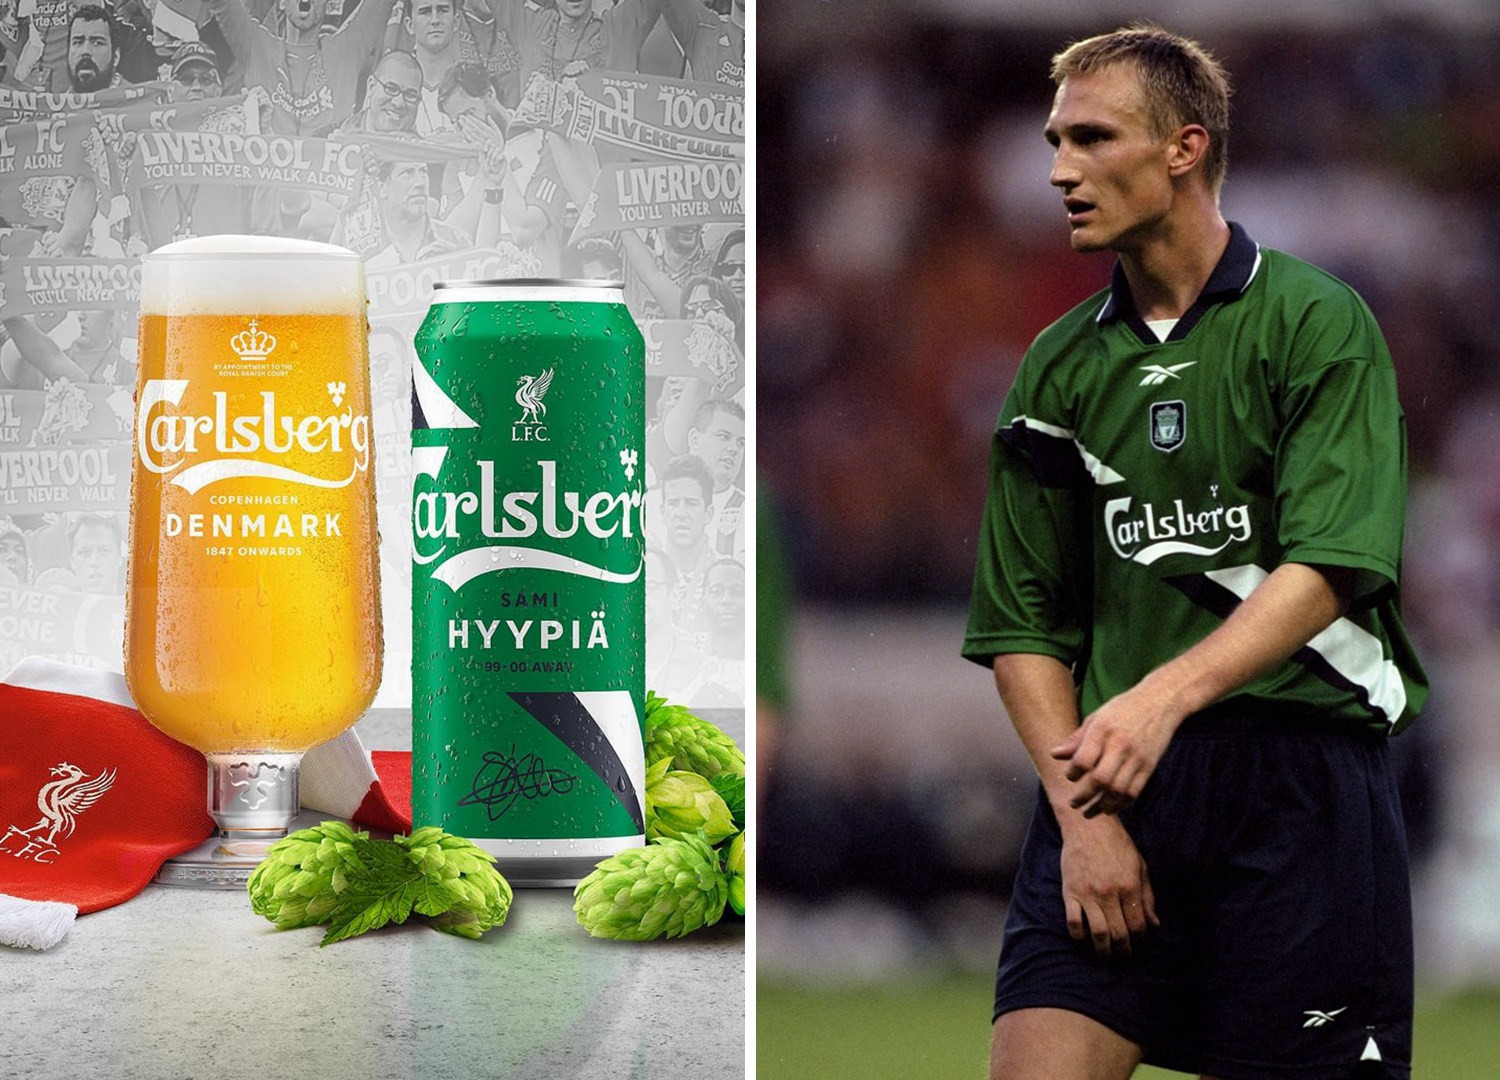 嘉士伯推出特别版啤酒庆祝与利物浦合作30周年